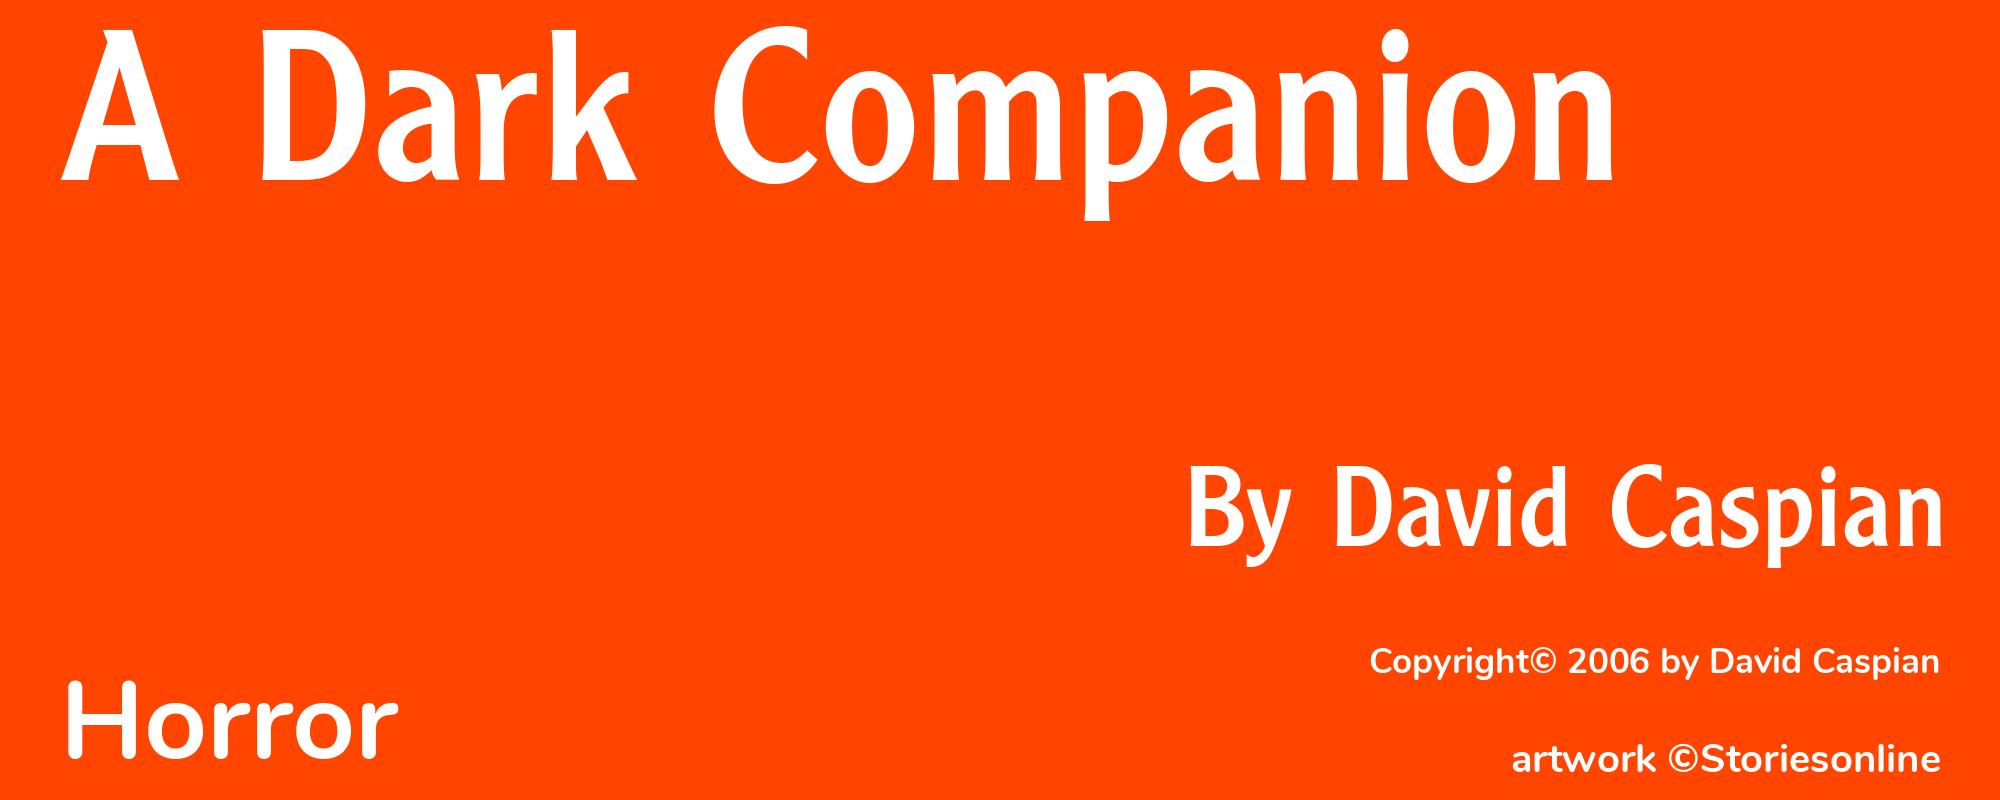 A Dark Companion - Cover